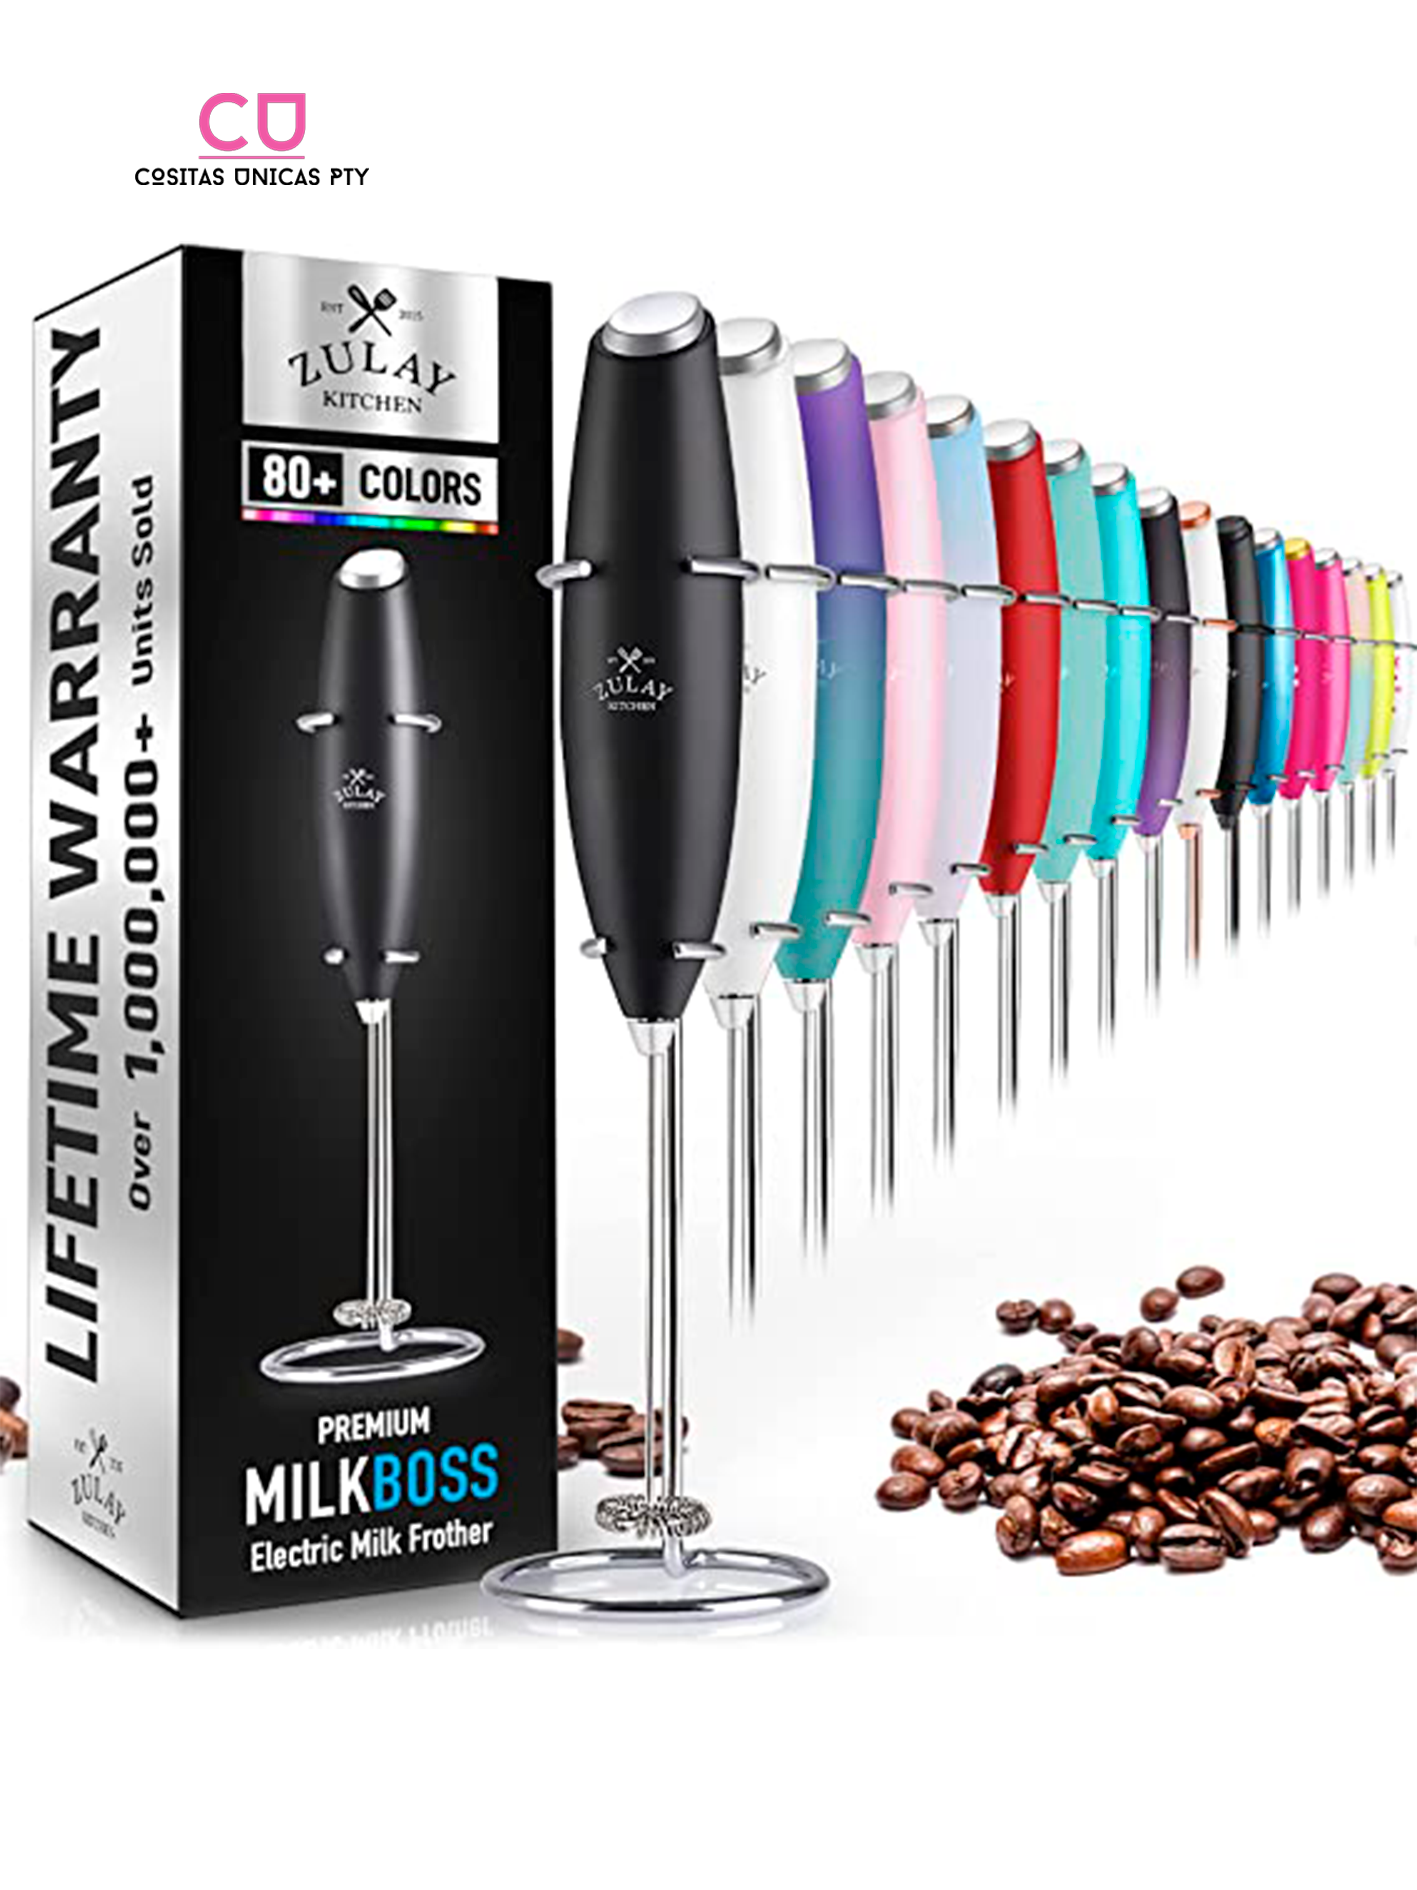 Taza eléctrica automática para mezclar té y leche, mezclador térmico,  almacenamiento de bebidas, suministros de escritorio